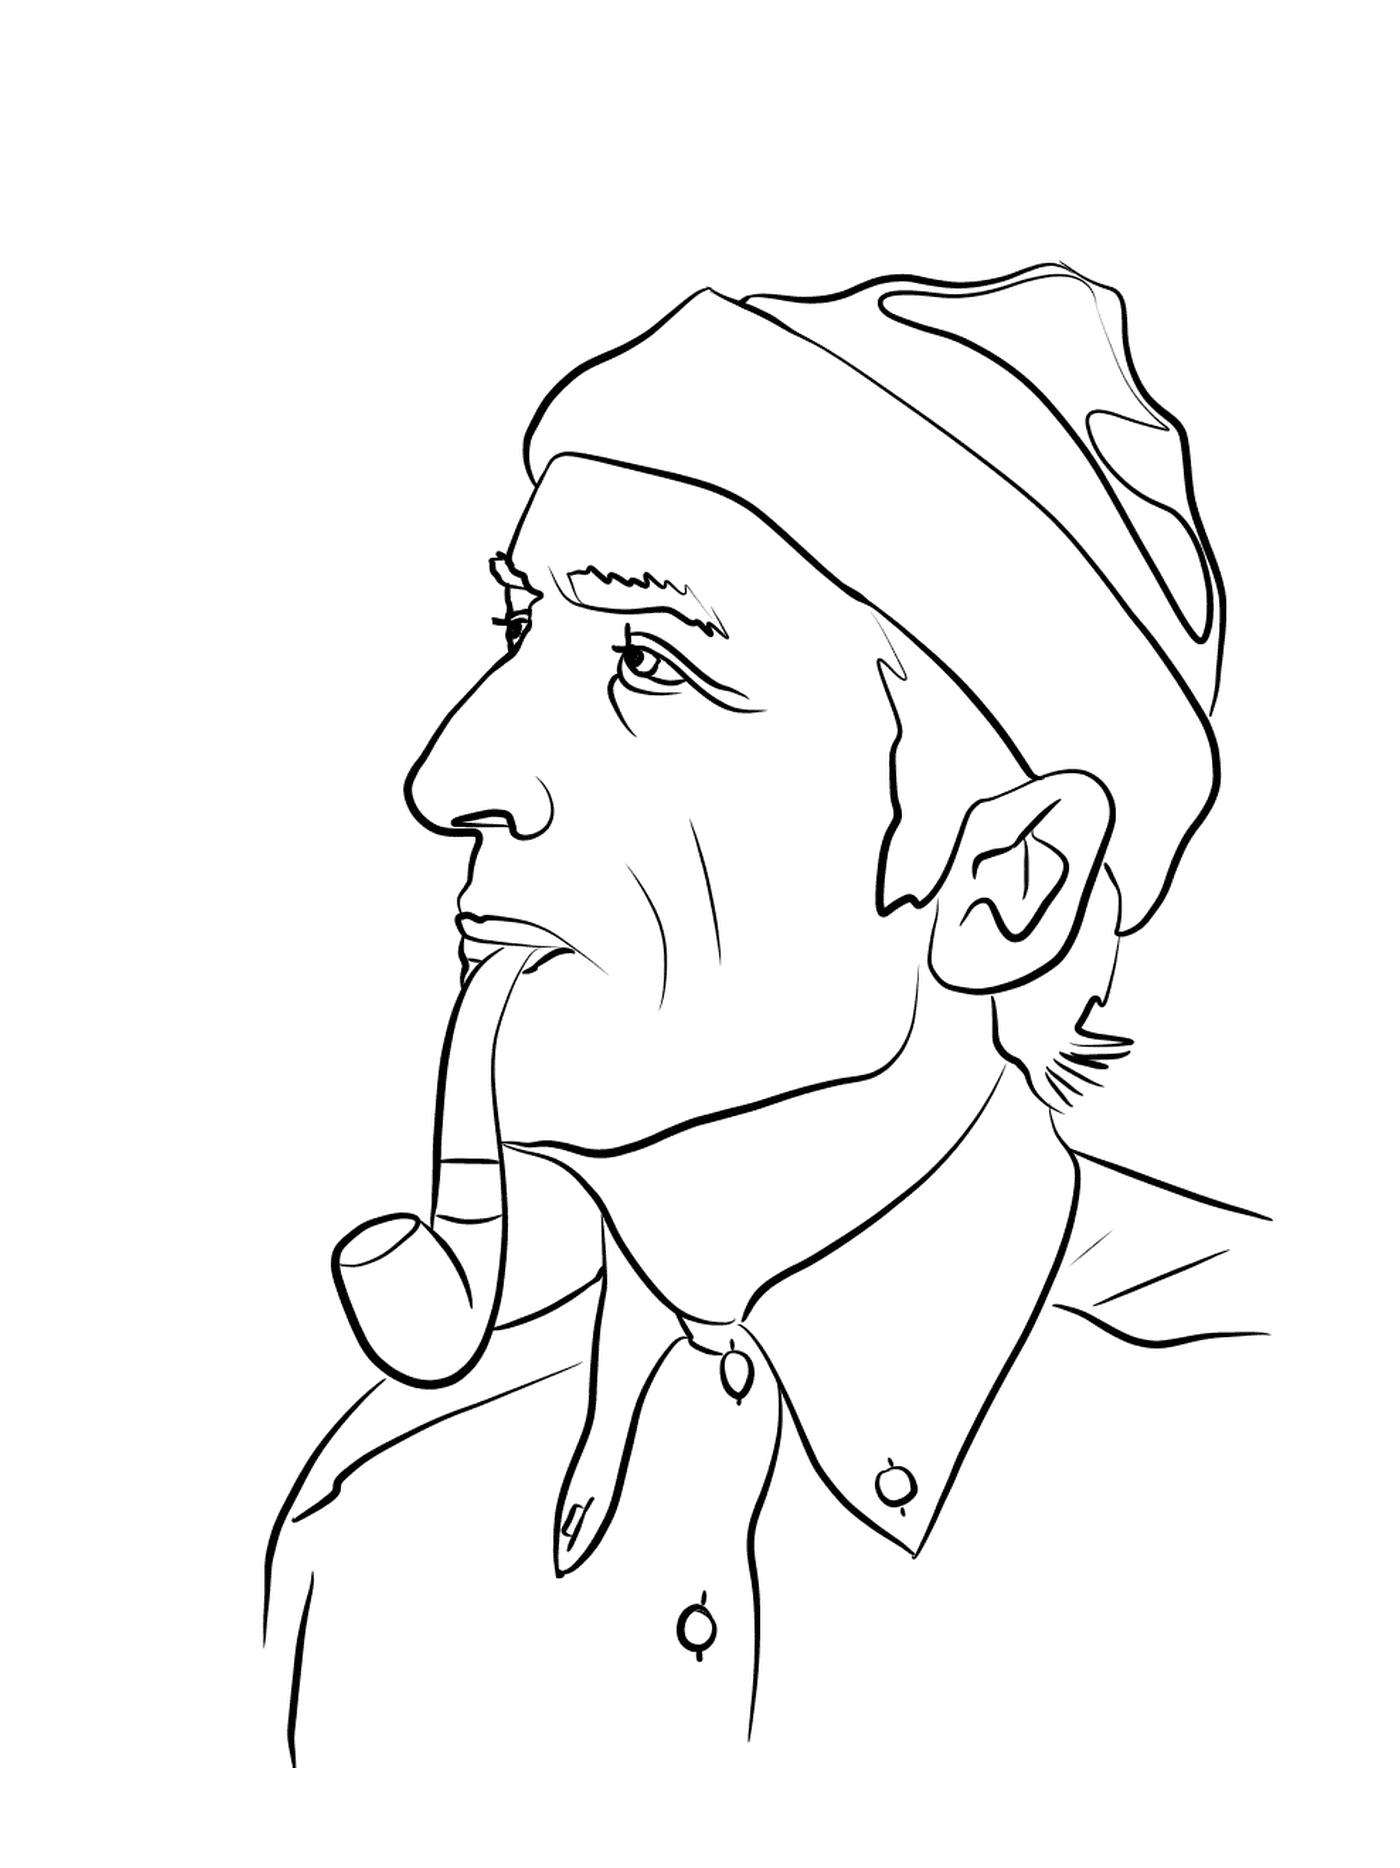  Jacques-Yves Cousteau, renomado explorador 